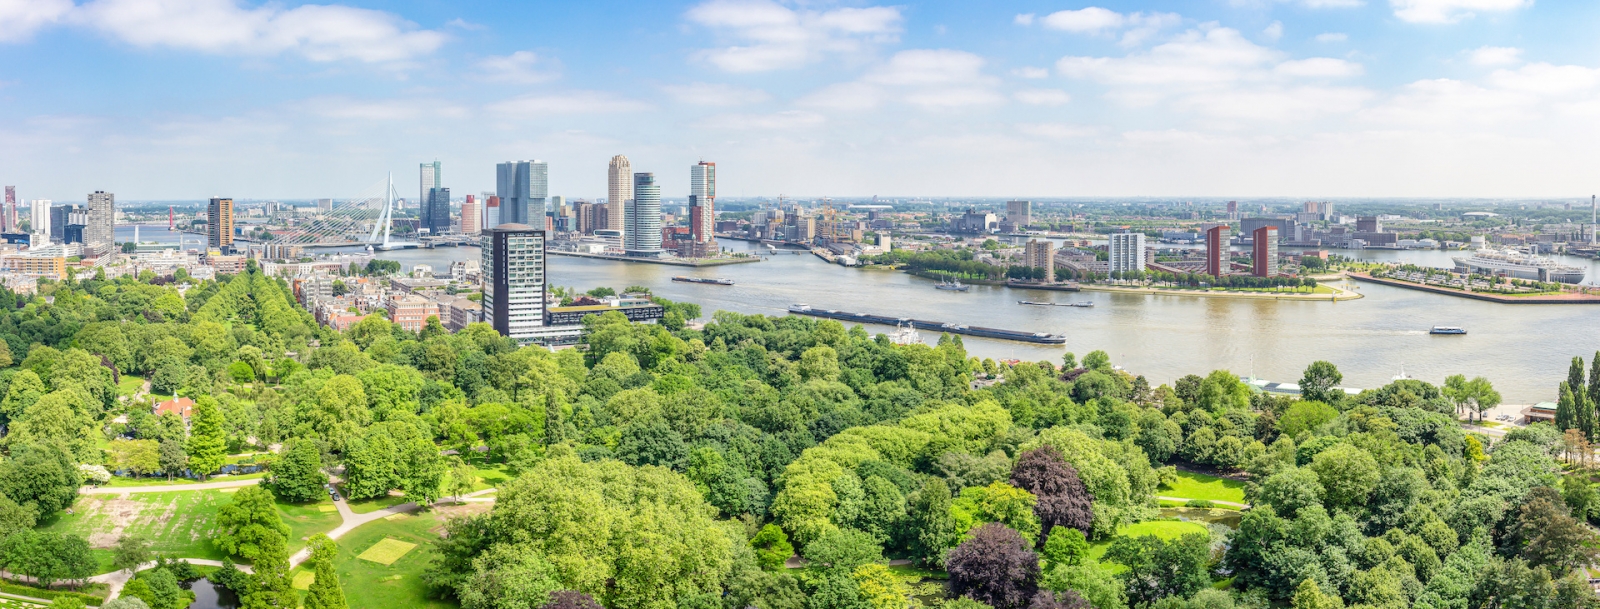 Панорамный вид на Роттердам с рекой Маас и мостом Эразма, парк у Евромачты, здания круизного терминала и отеля New York, Катендрехт с пароходом SS Rotterdam